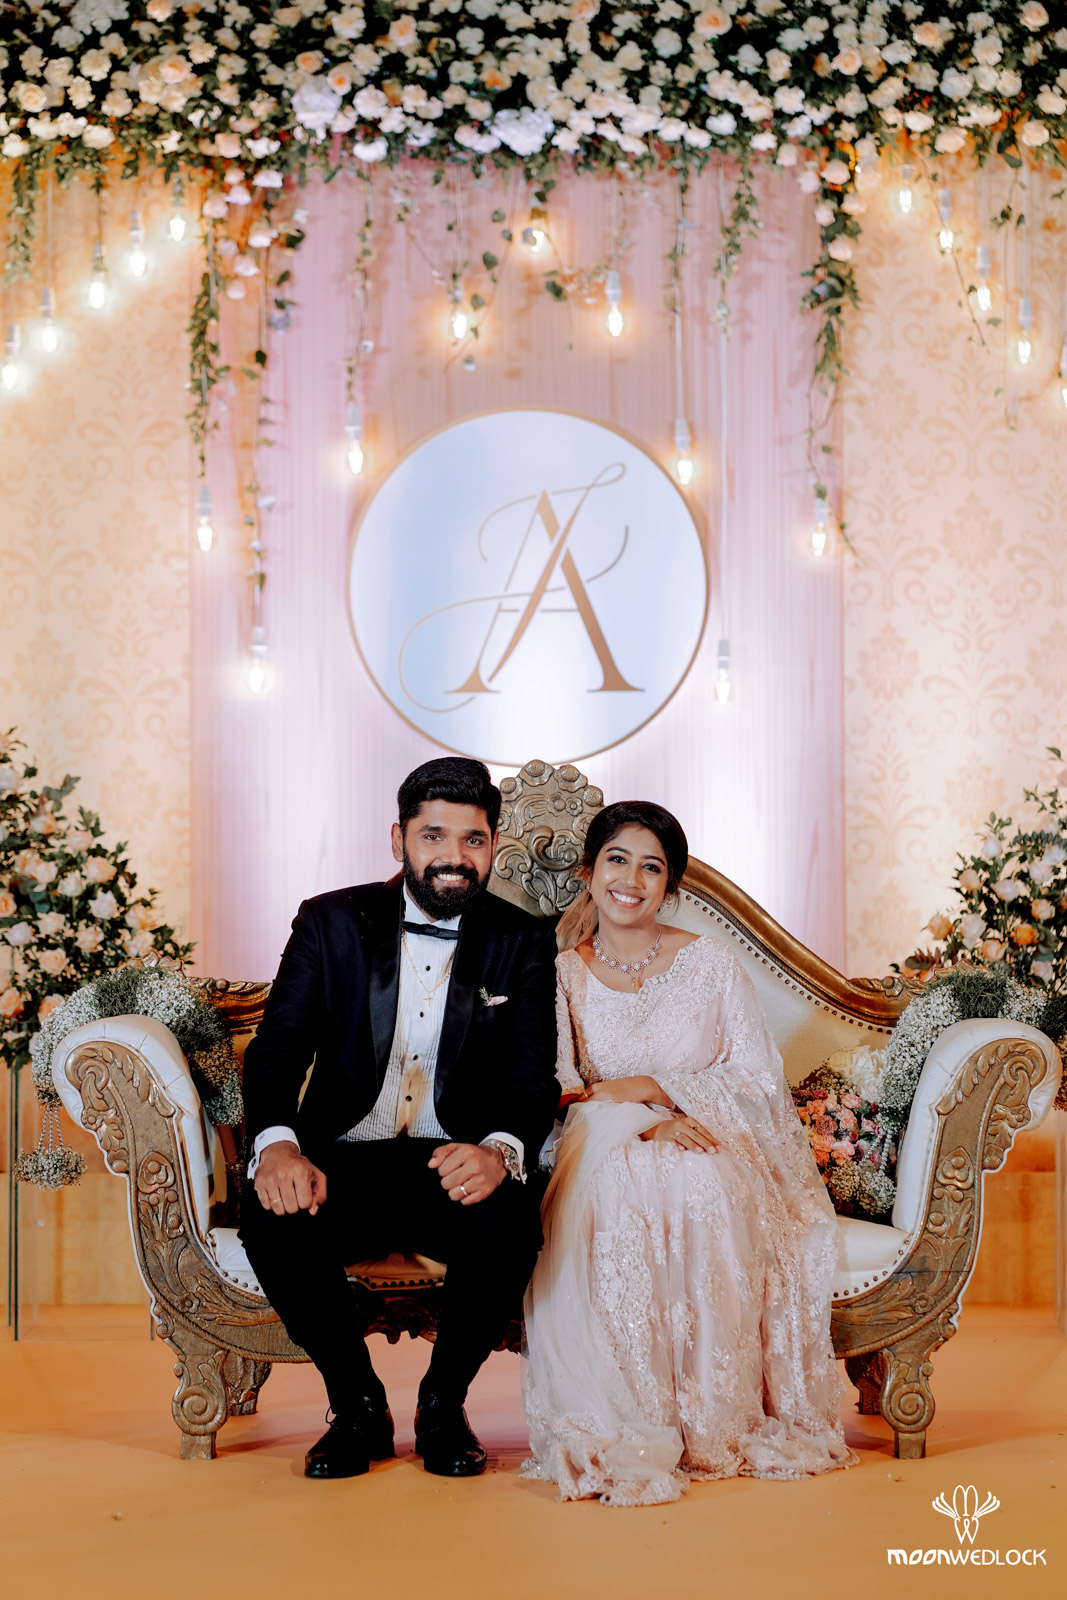 bangalore-christian-wedding-photography-moonwedlock (29)